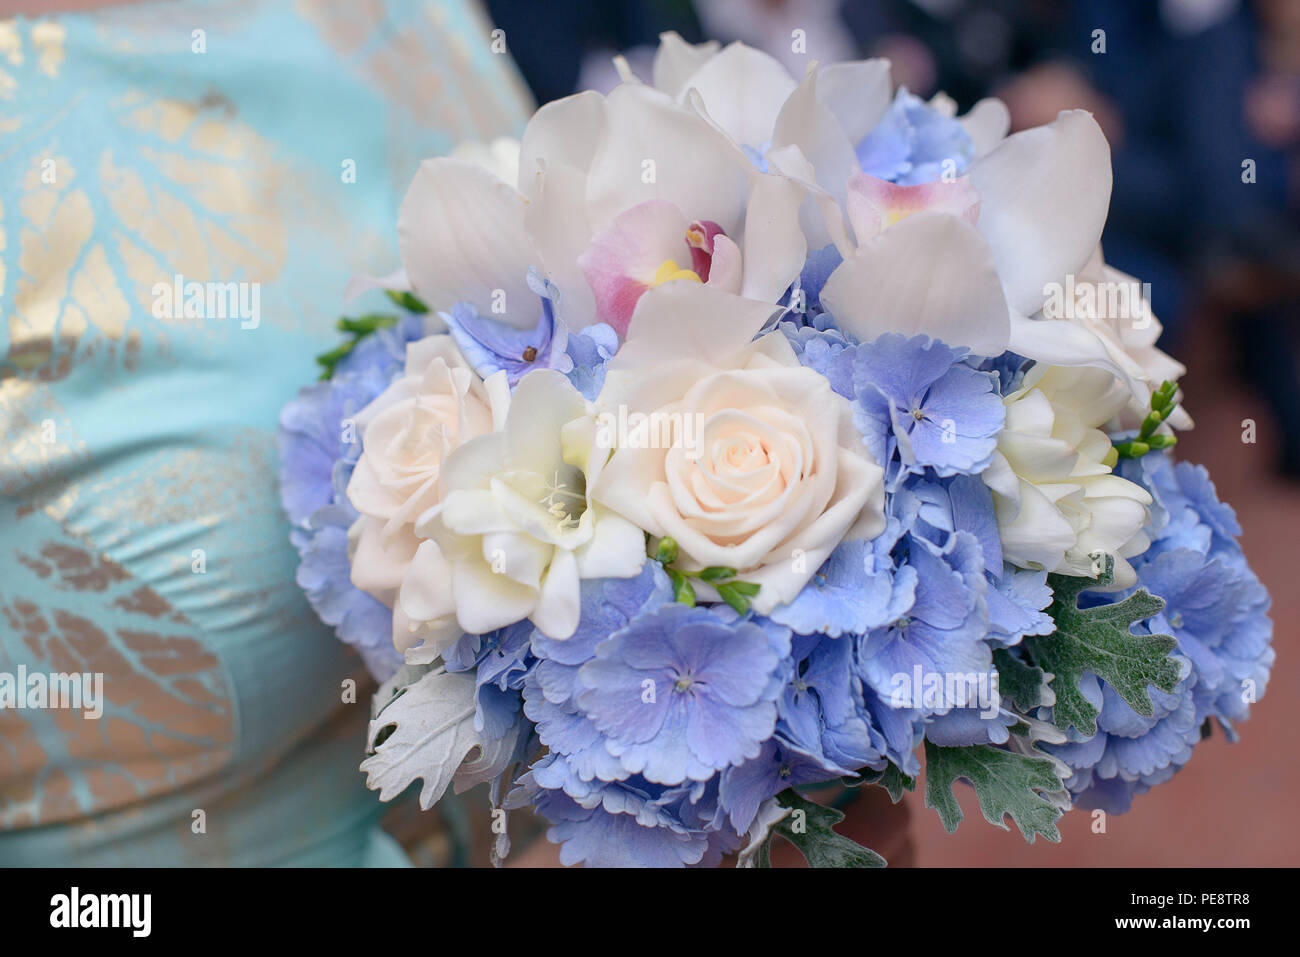 Kaukasischen jungen Brautjungfer oder weiblichen Gast trägt ein blaues Kleid mit silbernen Details und halten einen Strauß mit rosa Rosen, amdorchids Stockfoto